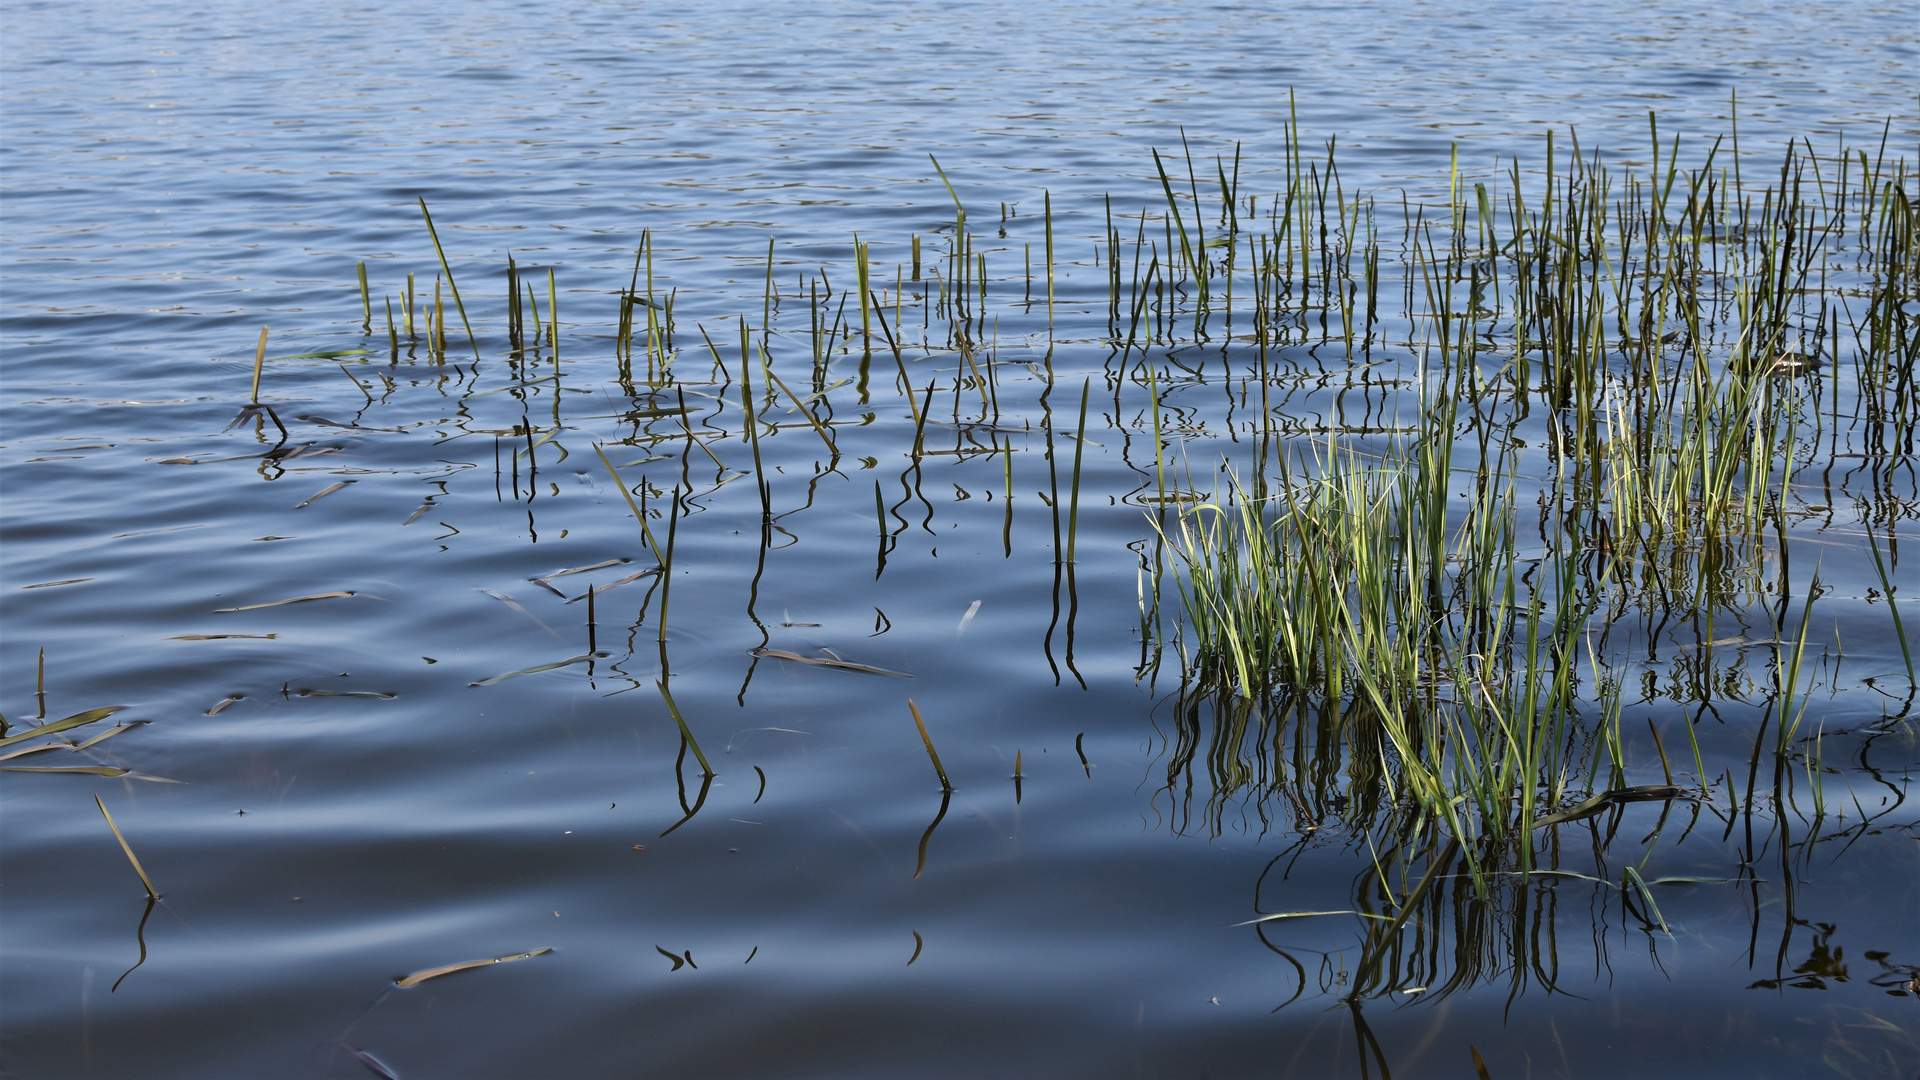 Grashalme ragen an die Wasseroberfläche des Sees